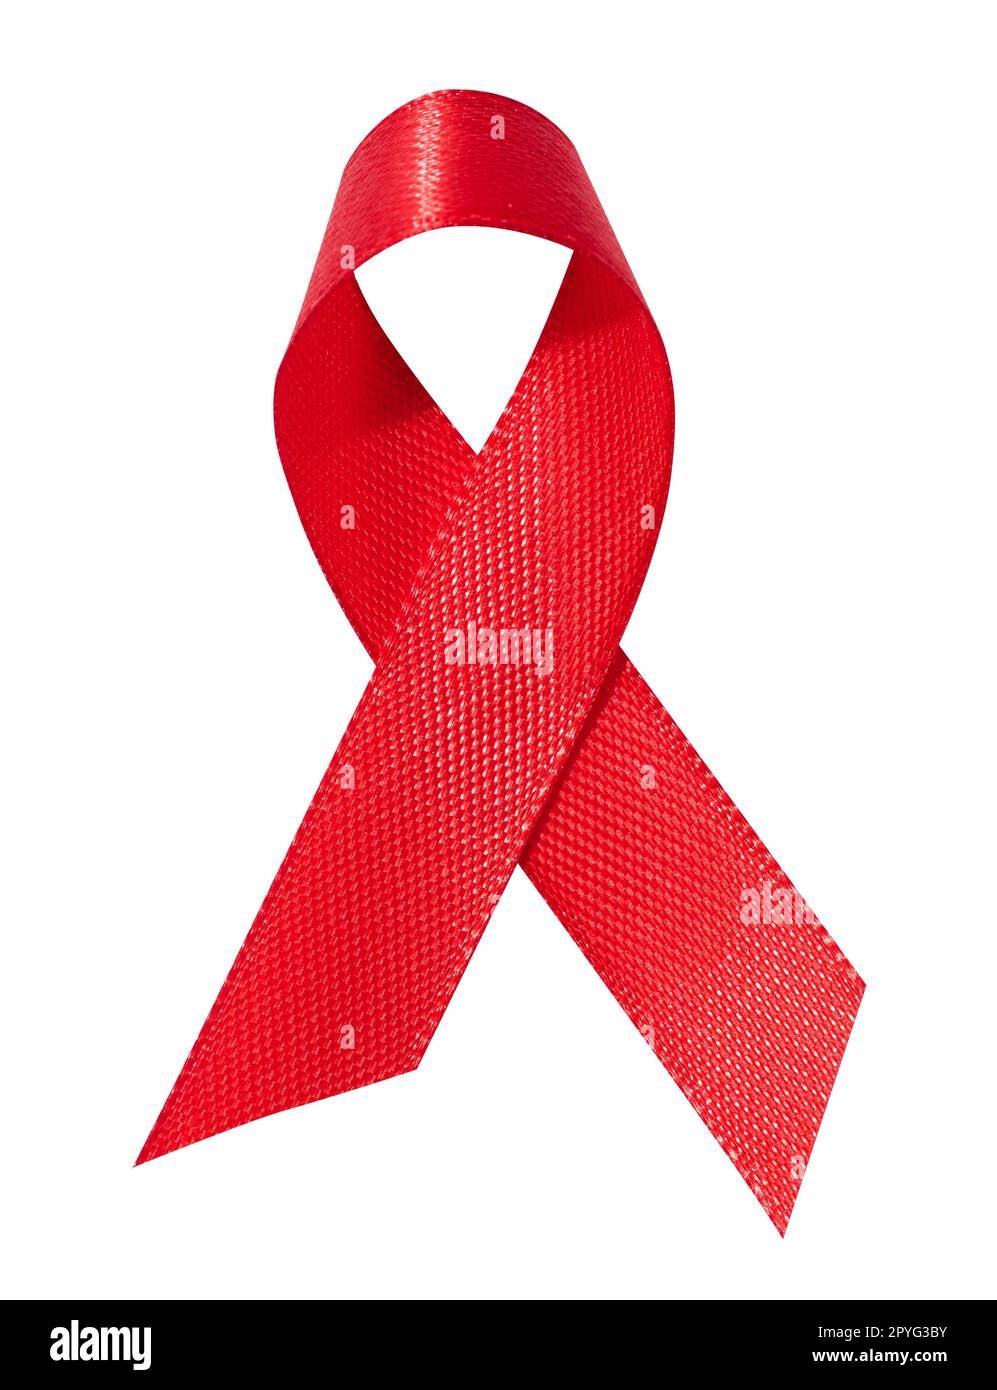 Ein seidenrotes Band in Form einer Schleife ist isoliert auf weißem Hintergrund, ein Symbol für den Kampf gegen AIDS und ein Zeichen der Solidarität und Unterstützung. Stockfoto